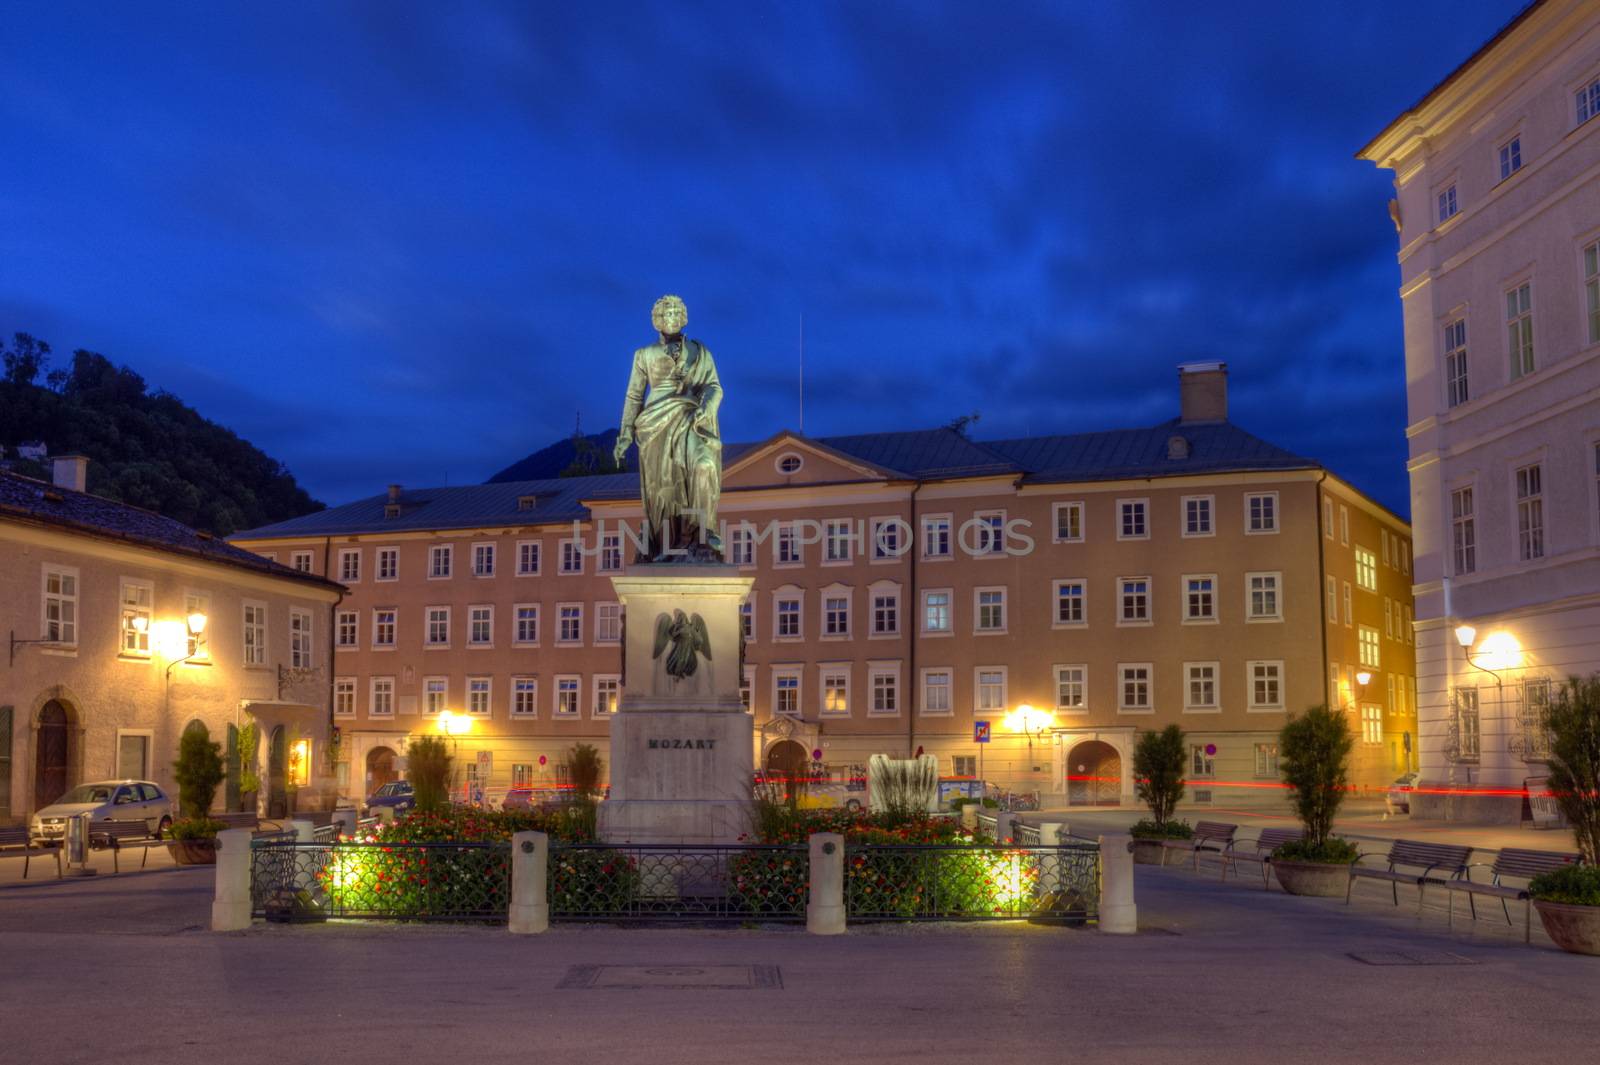 Mozart statue on Mozart Square, Mozartplatz, in Salzburg by night, Austria, HDR